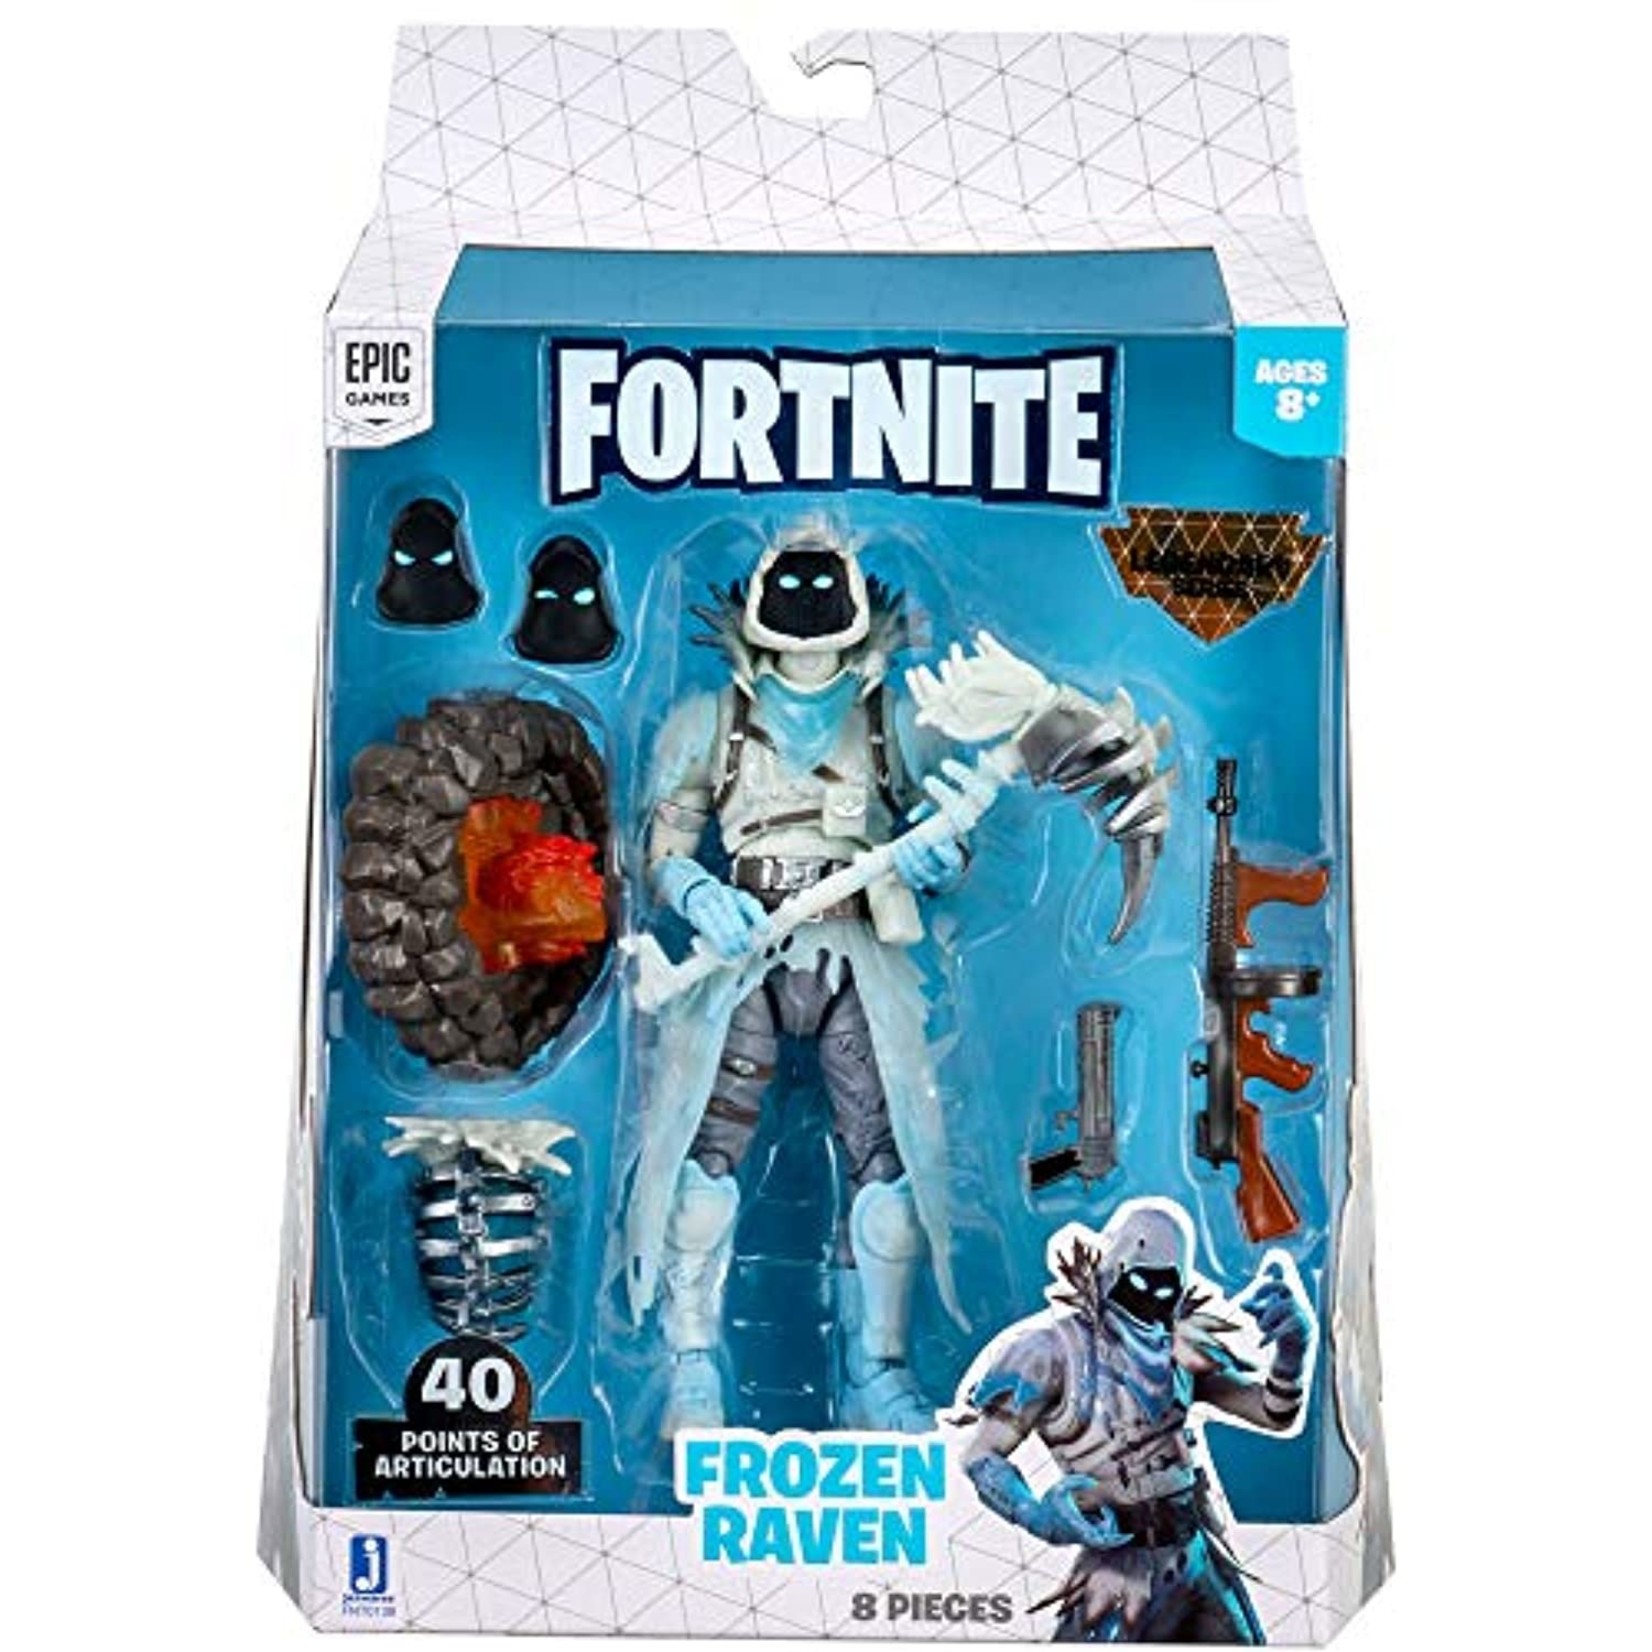 Fortnite - 1 Figure Pack Legendary Series Frozen Raven